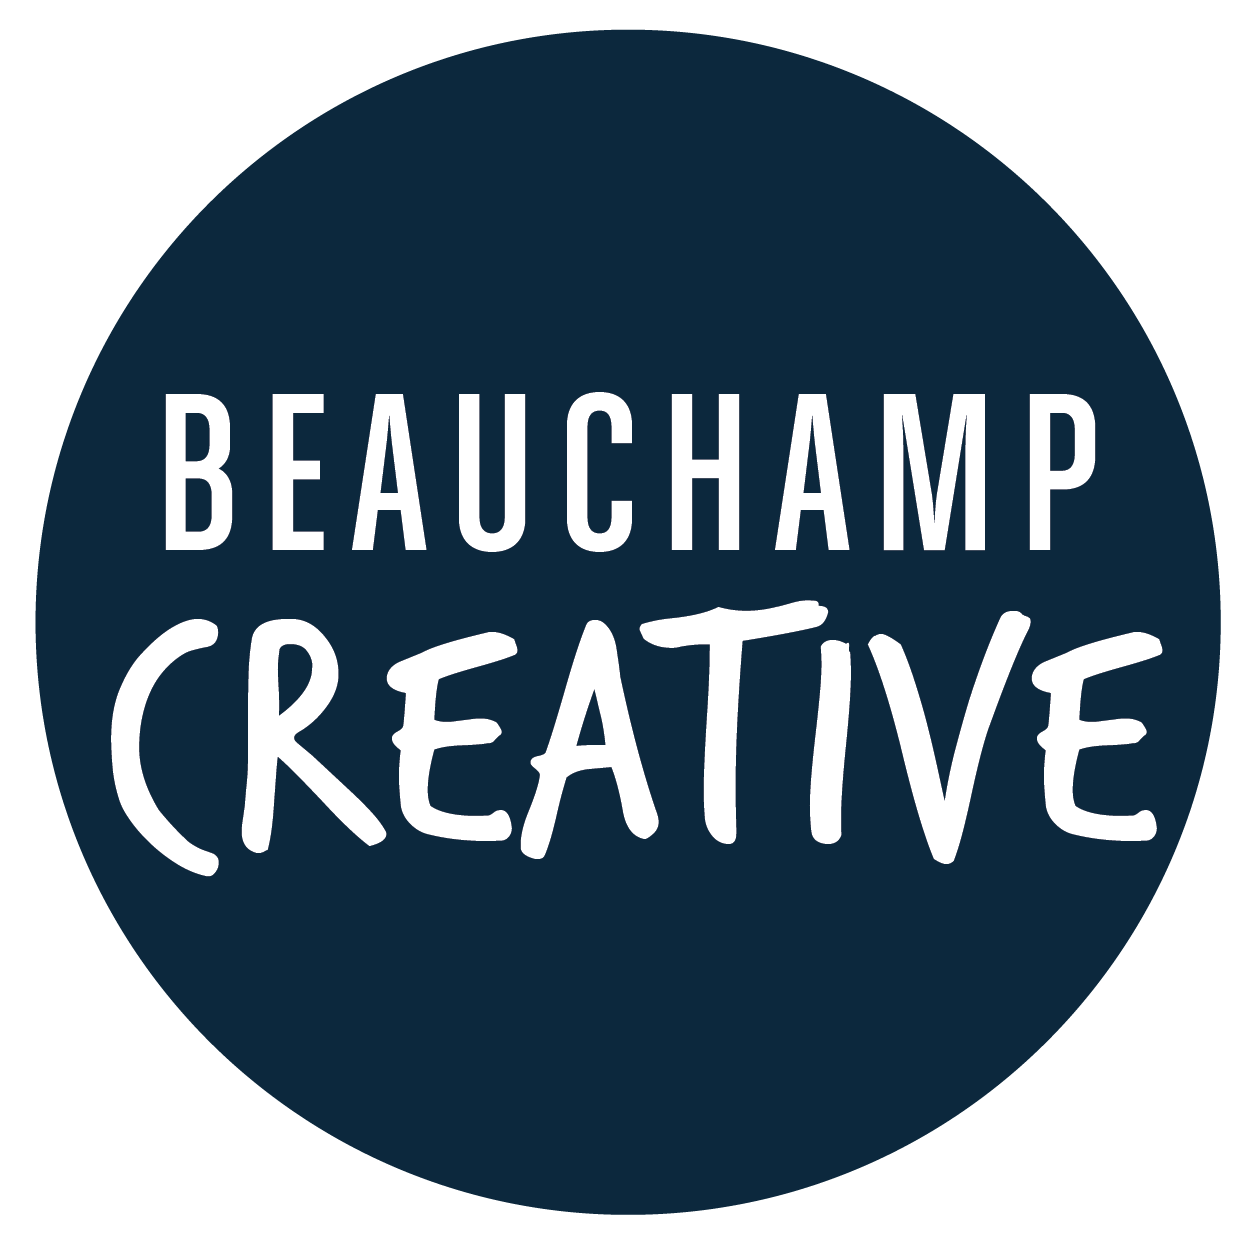 Beauchamp Creative